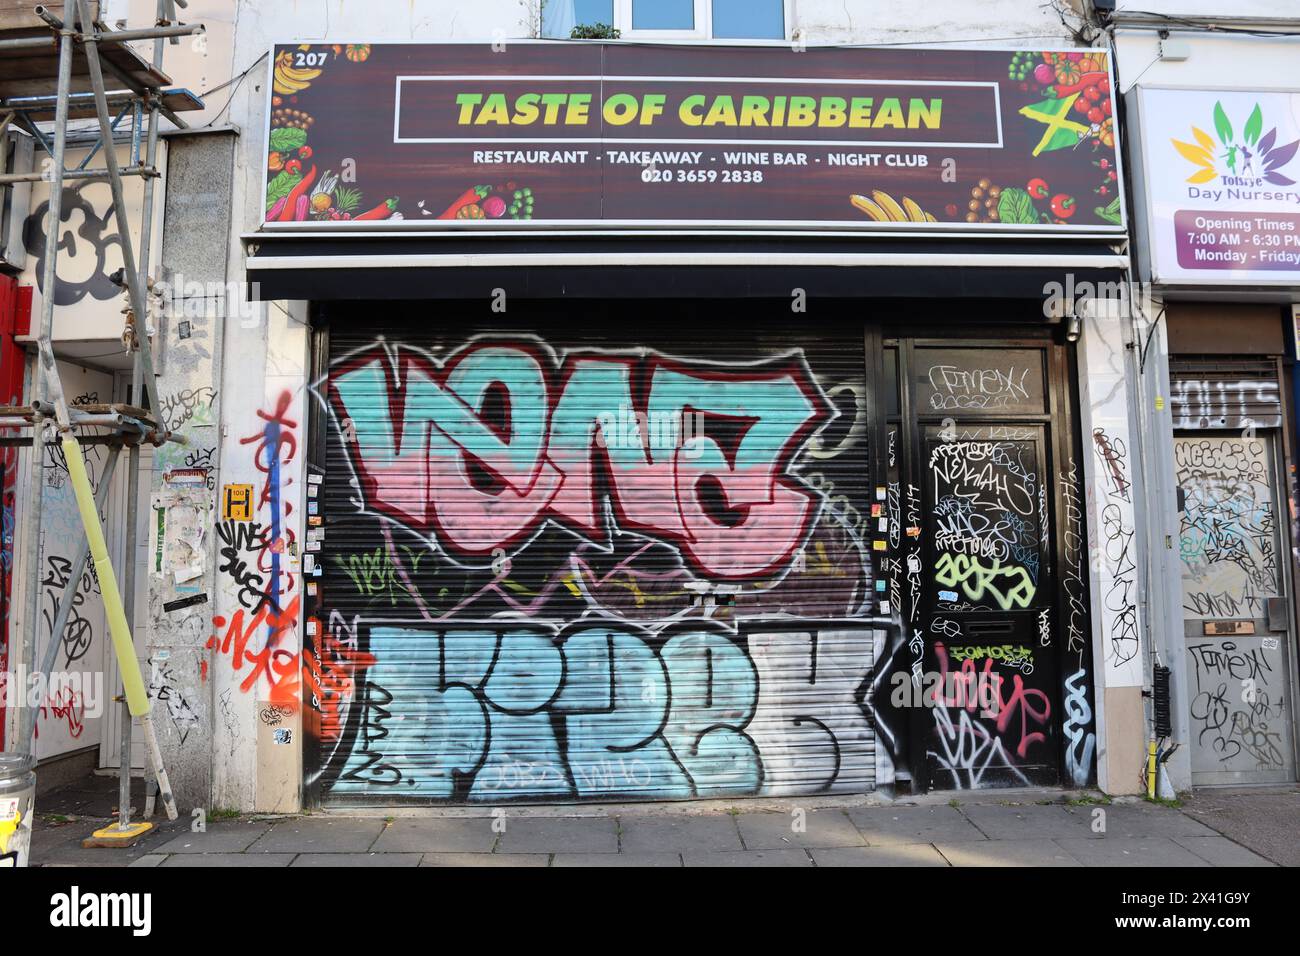 Taste of Caribbean, Rye Lane, Peckham Stock Photo